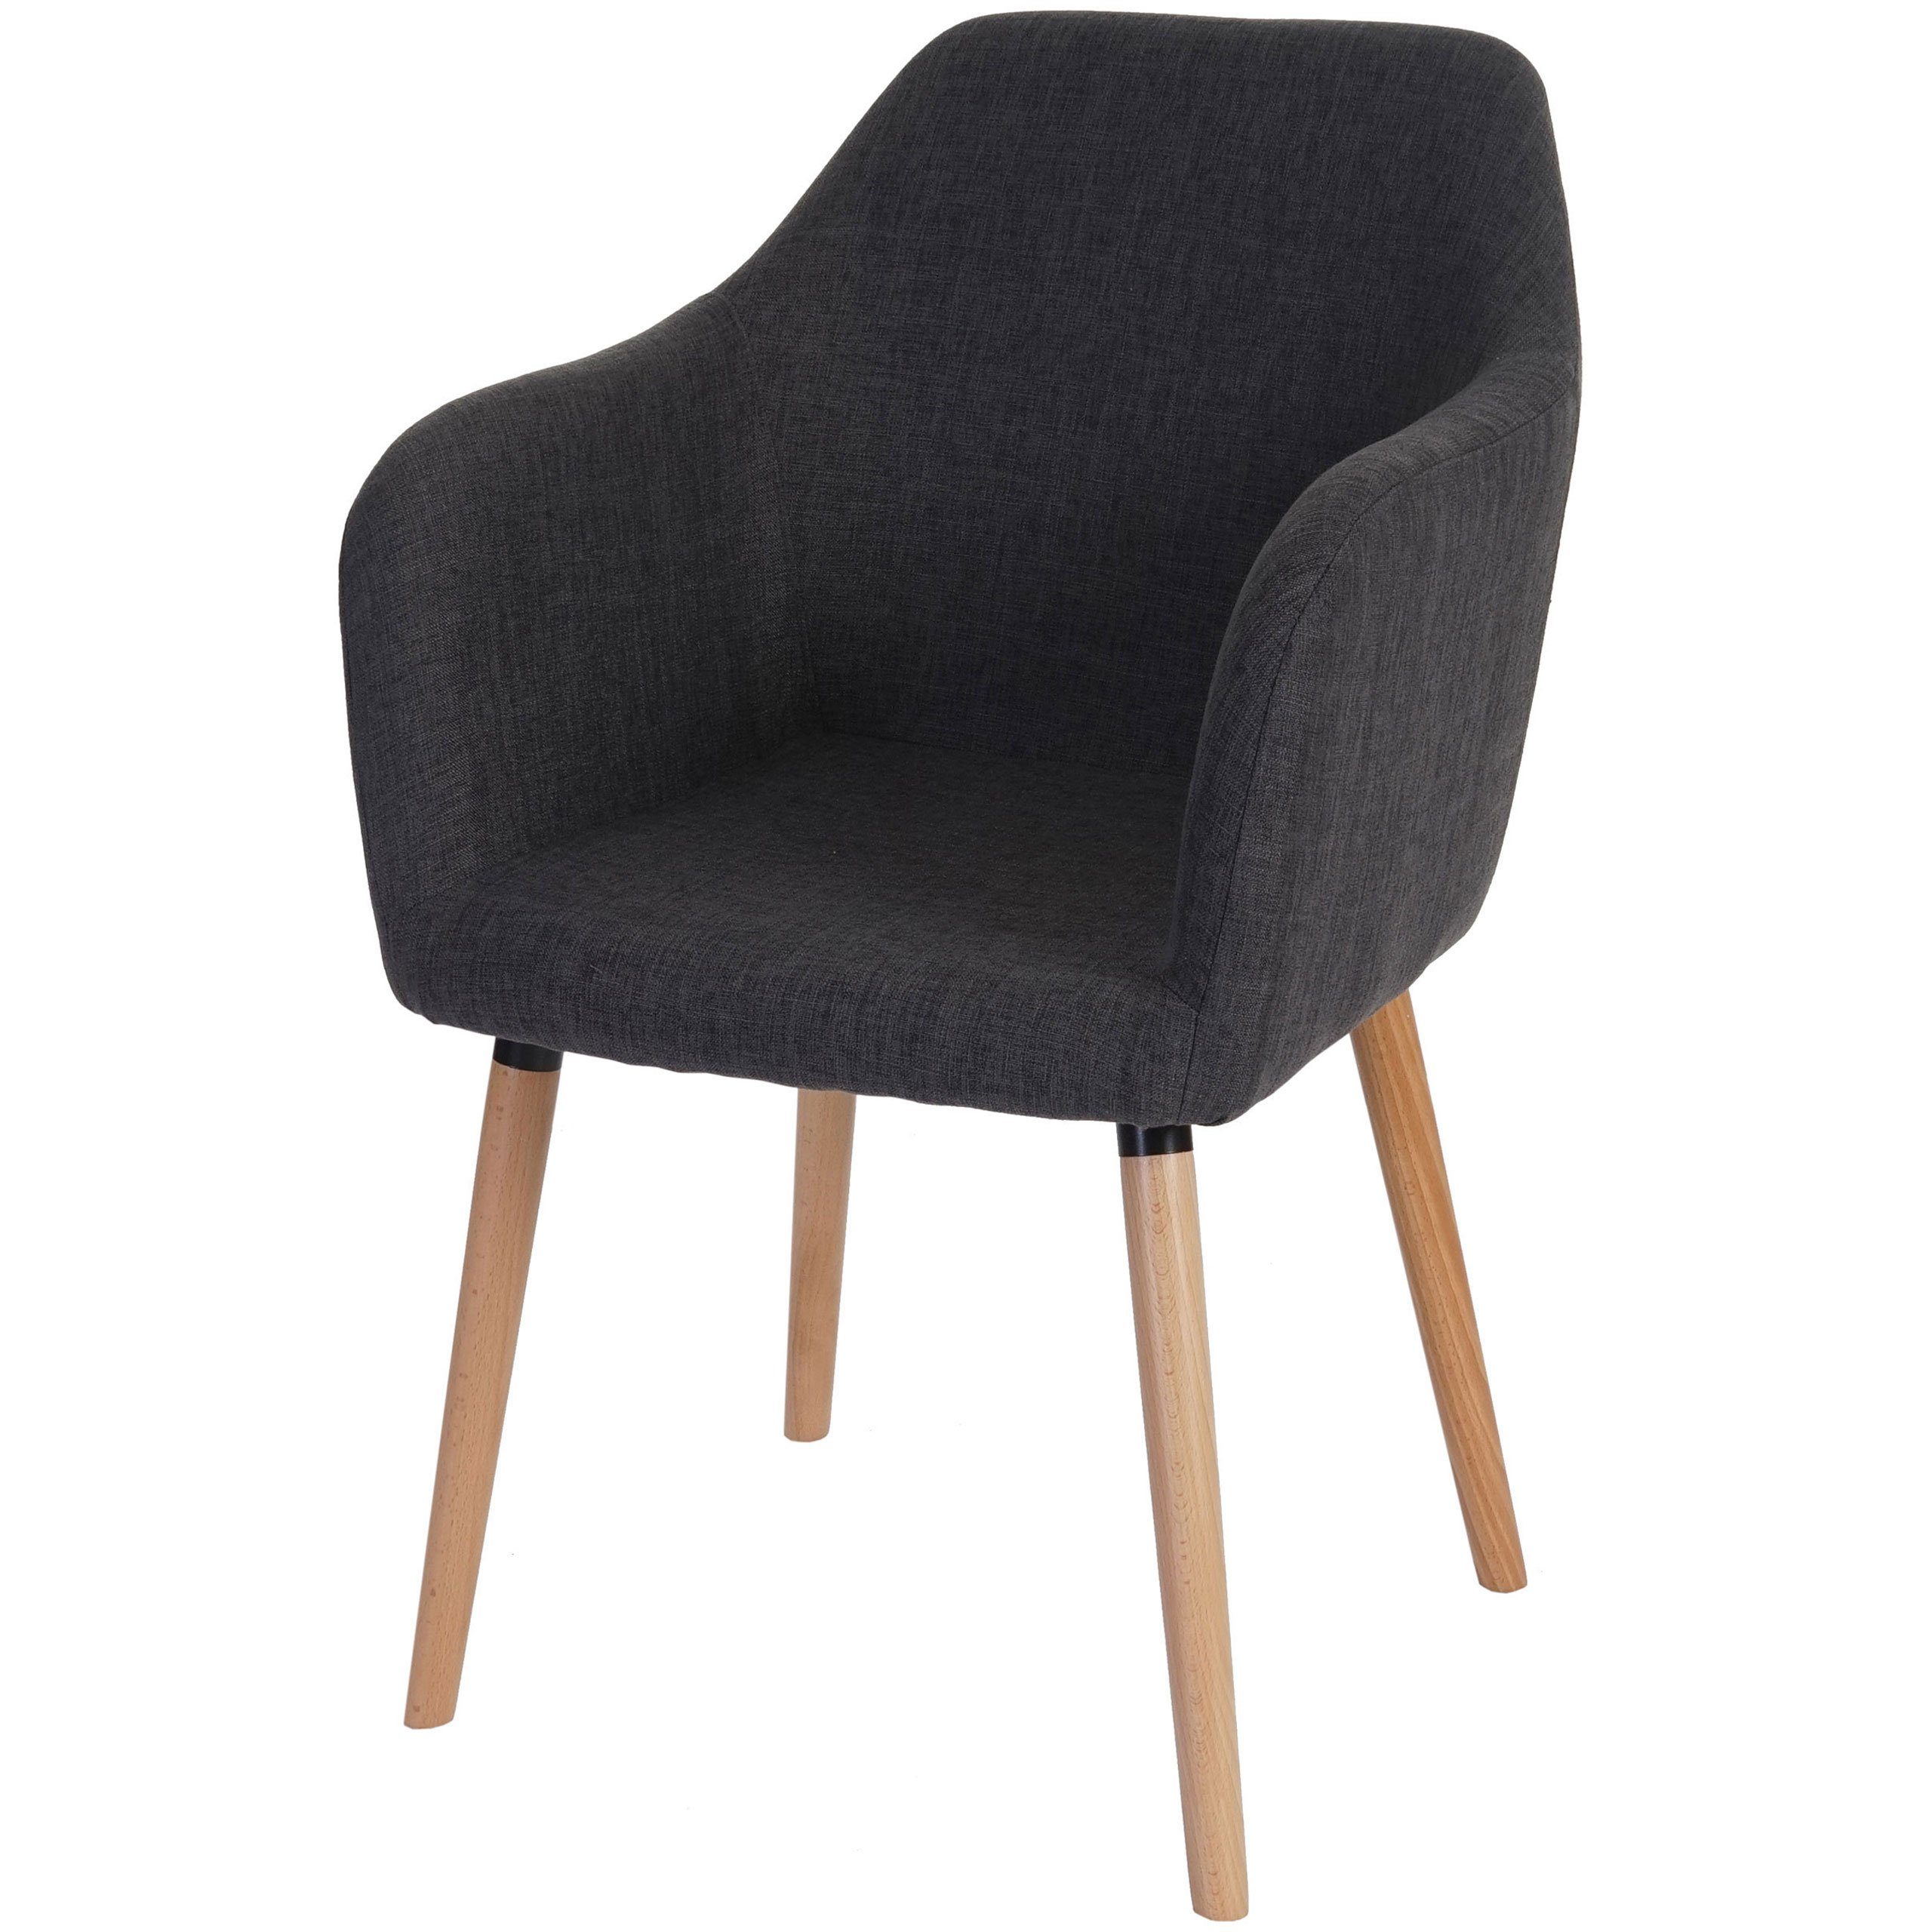 MCW Esszimmerstuhl »Vaasa T381«, 50er Jahre Stil, Bequeme Sitzpolsterung,  Kunststoffuntersatz unter den Füßen online kaufen | OTTO